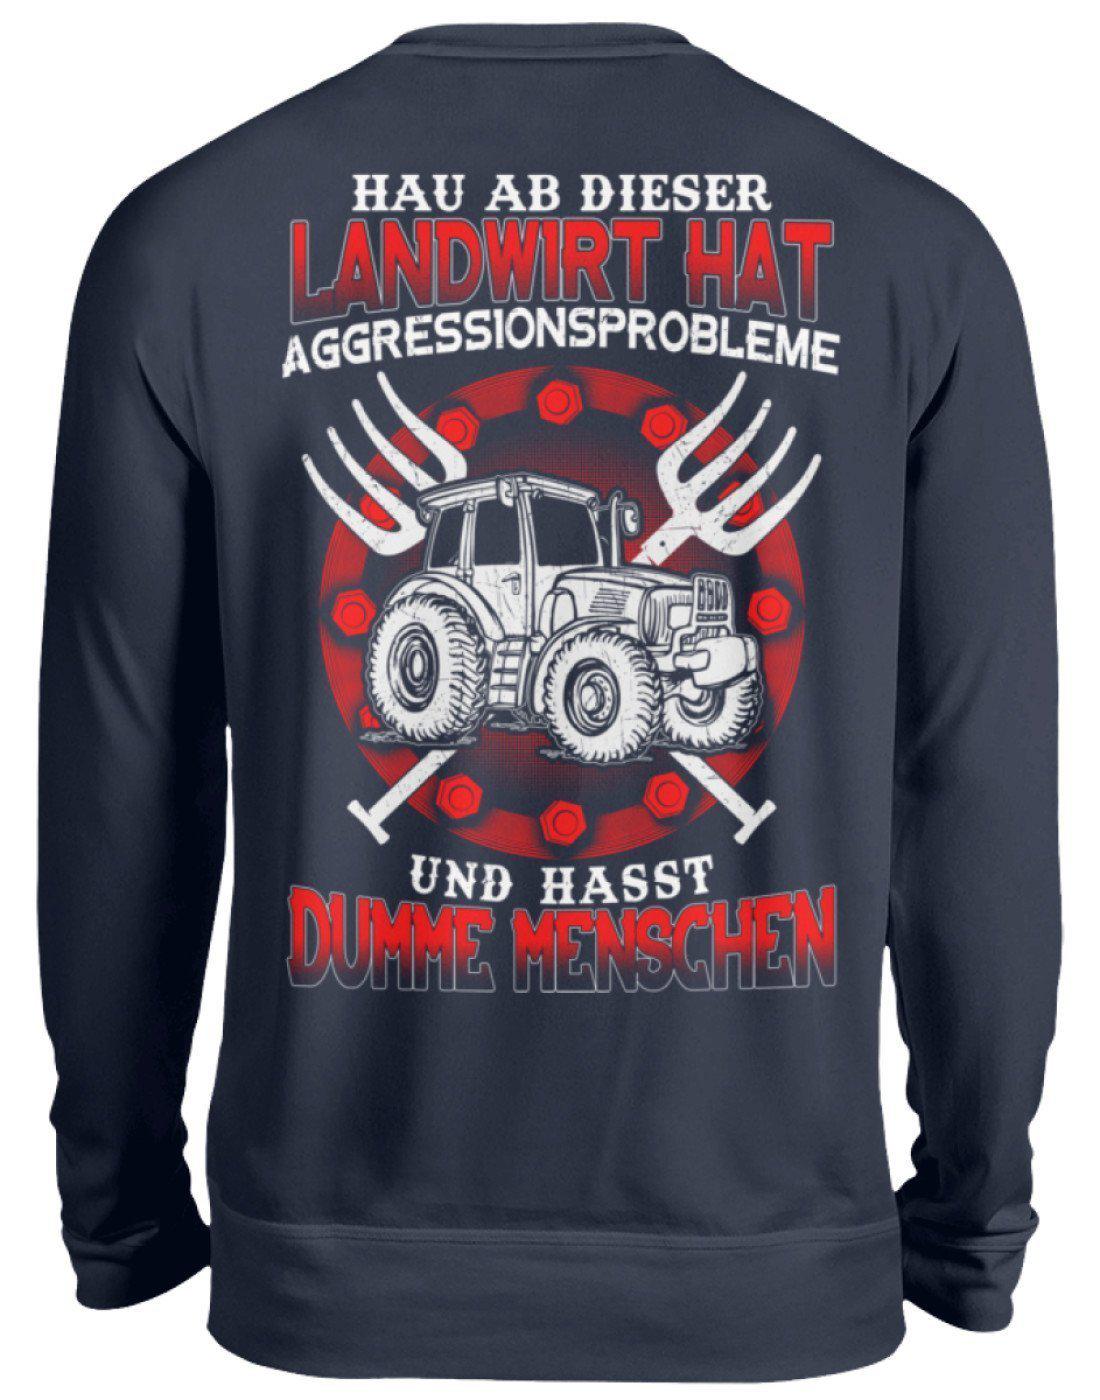 Landwirt hat Aggressionsprobleme · Unisex Sweatshirt Pullover-Unisex Sweatshirt-Oxford Navy-S-Agrarstarz